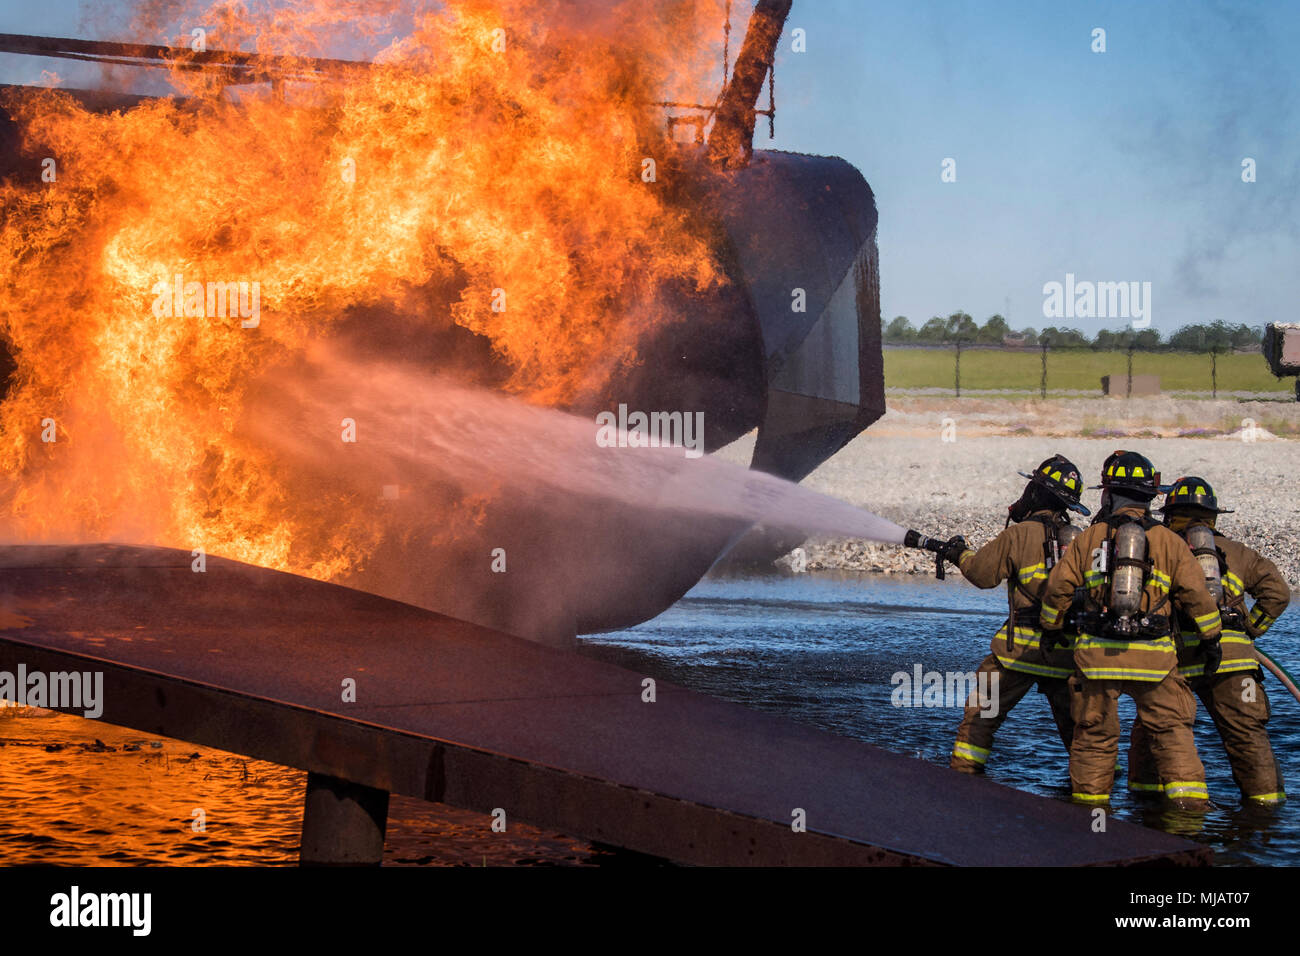 Les pompiers du service des incendies de Valdosta (VFD) éteindre un incendie d'aéronefs au cours de l'entraînement au tir réel, le 25 avril 2018, à Moody Air Force Base, Ga. Les pompiers du 23e Escadron de génie civil et de la VD ont participé à la formation d'acquérir plus d'expérience la lutte contre les incendies d'aéronefs et de travailler ensemble comme une équipe homogène tout en pratiquant des techniques de lutte contre les incendies appropriée et sûre. (U.S. Air Force photo par un membre de la 1re classe Eugene Oliver) Banque D'Images